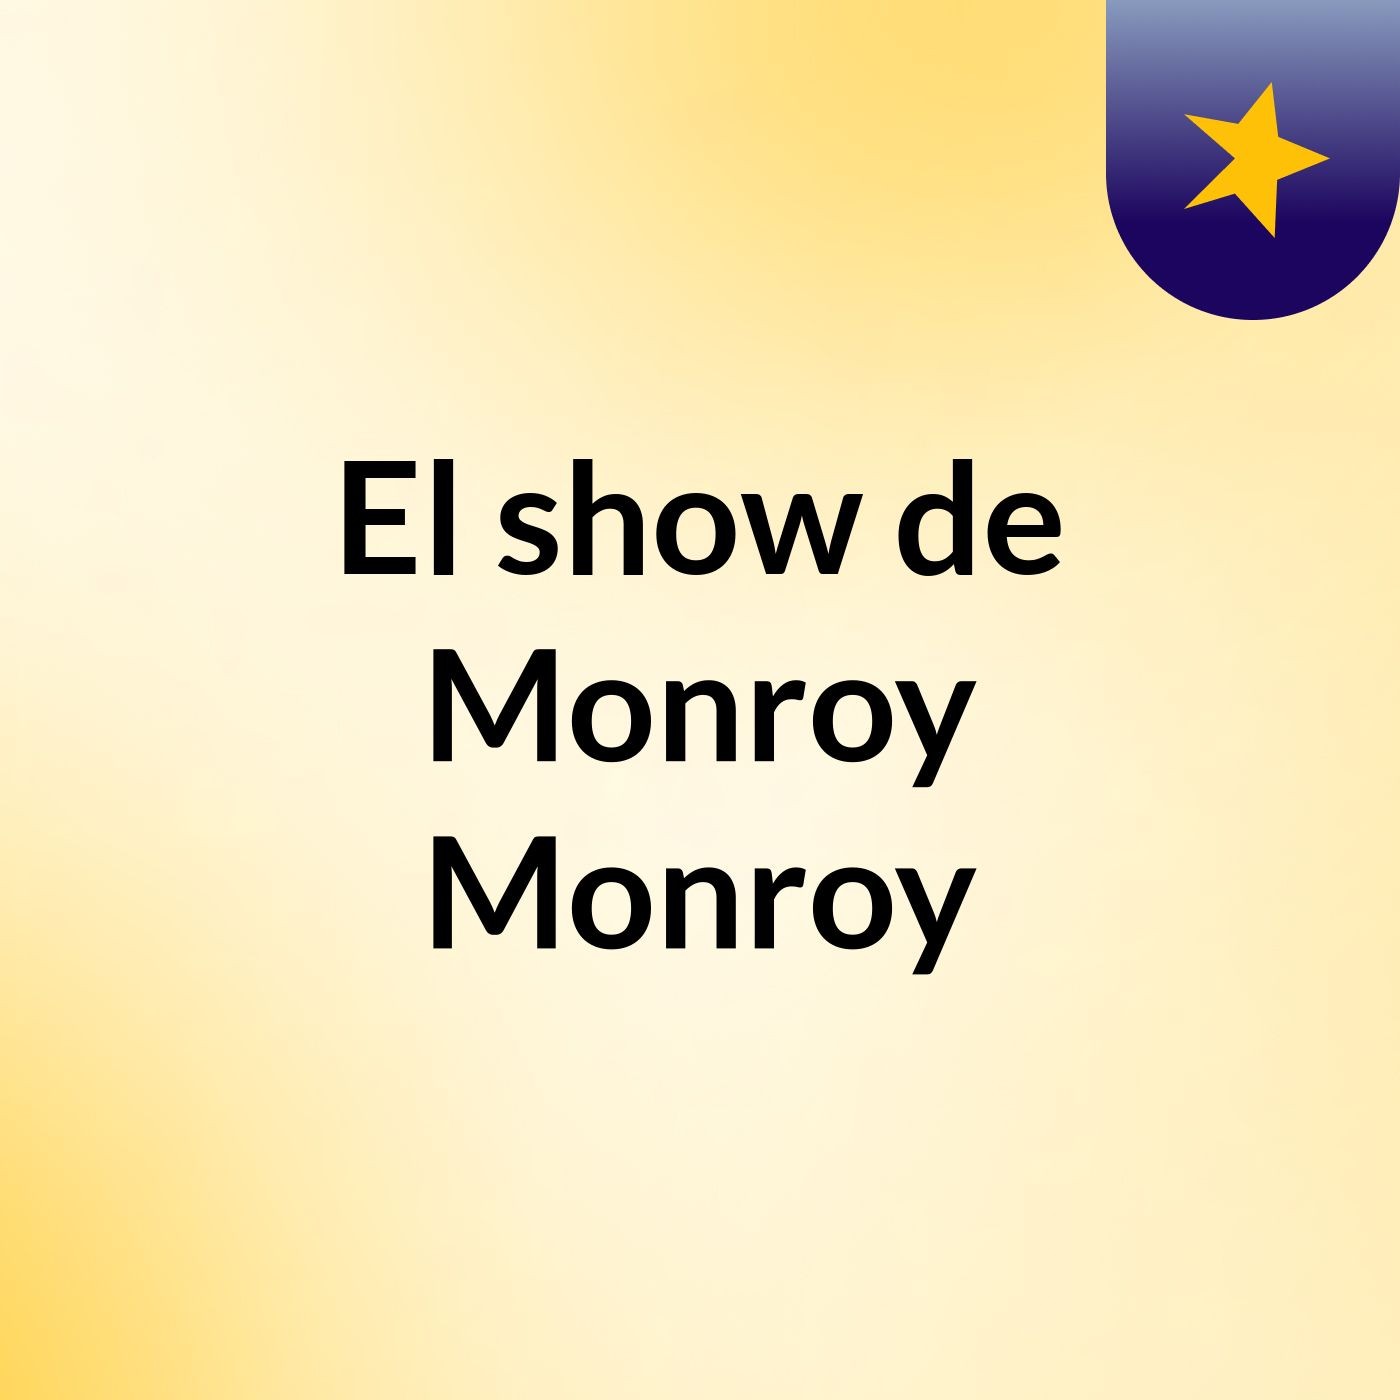 El show de Monroy Monroy